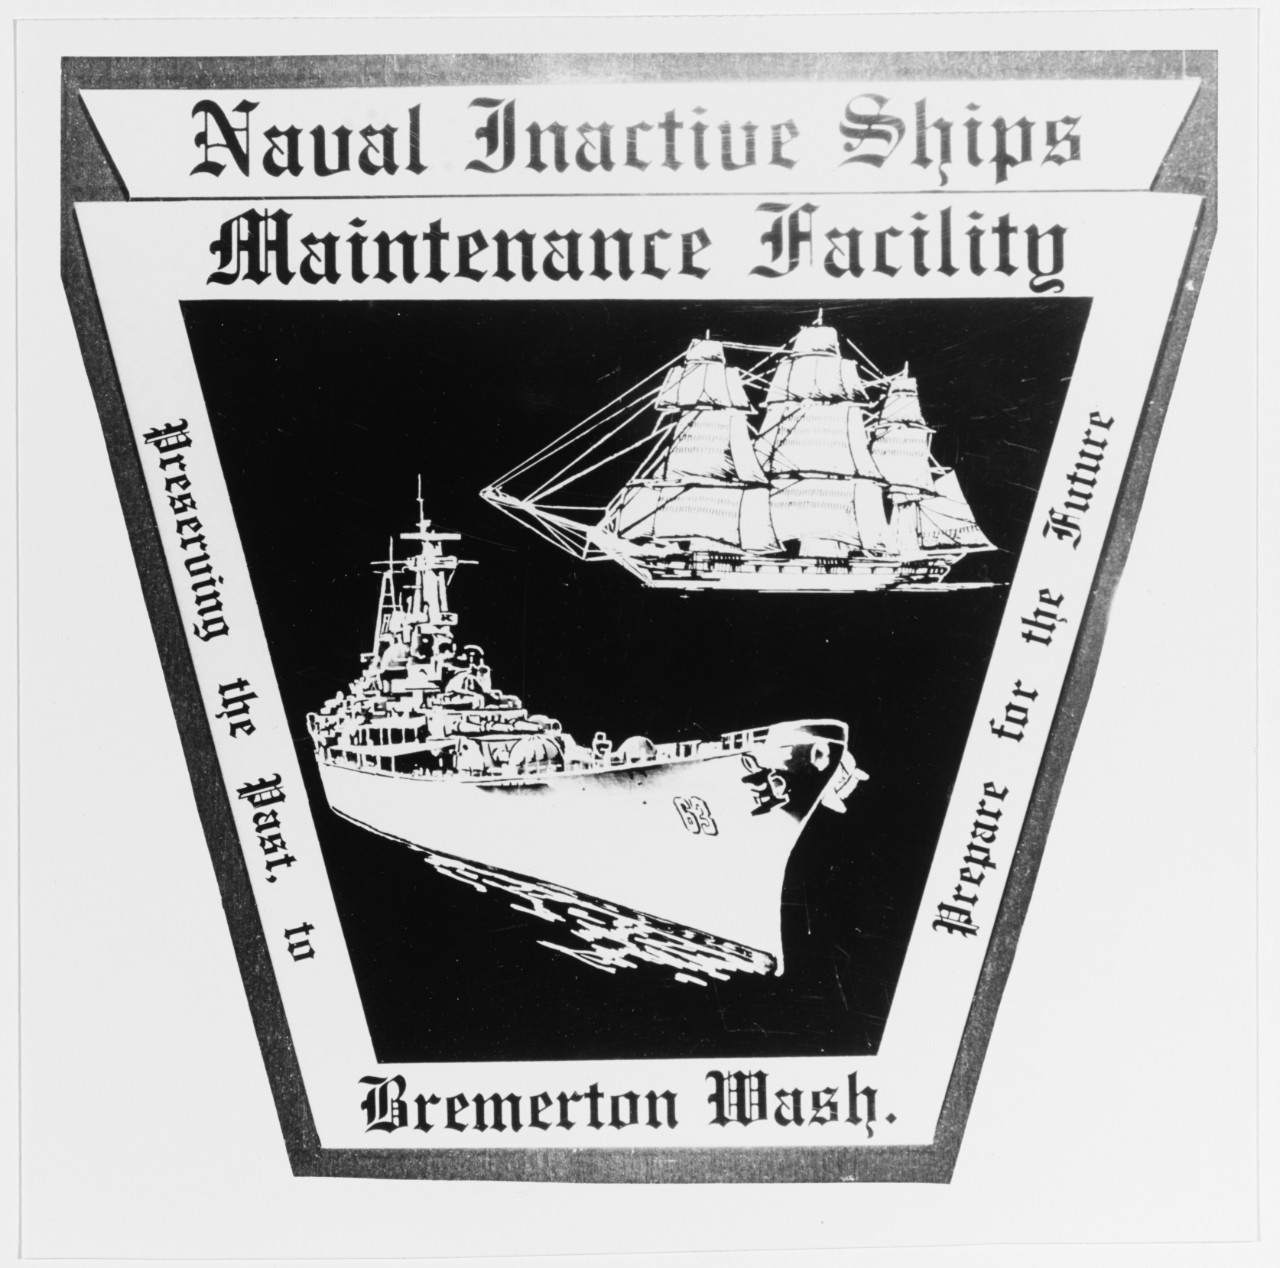 Insignia: Naval inactive ships maintenance facility, Bremerton, Washington.